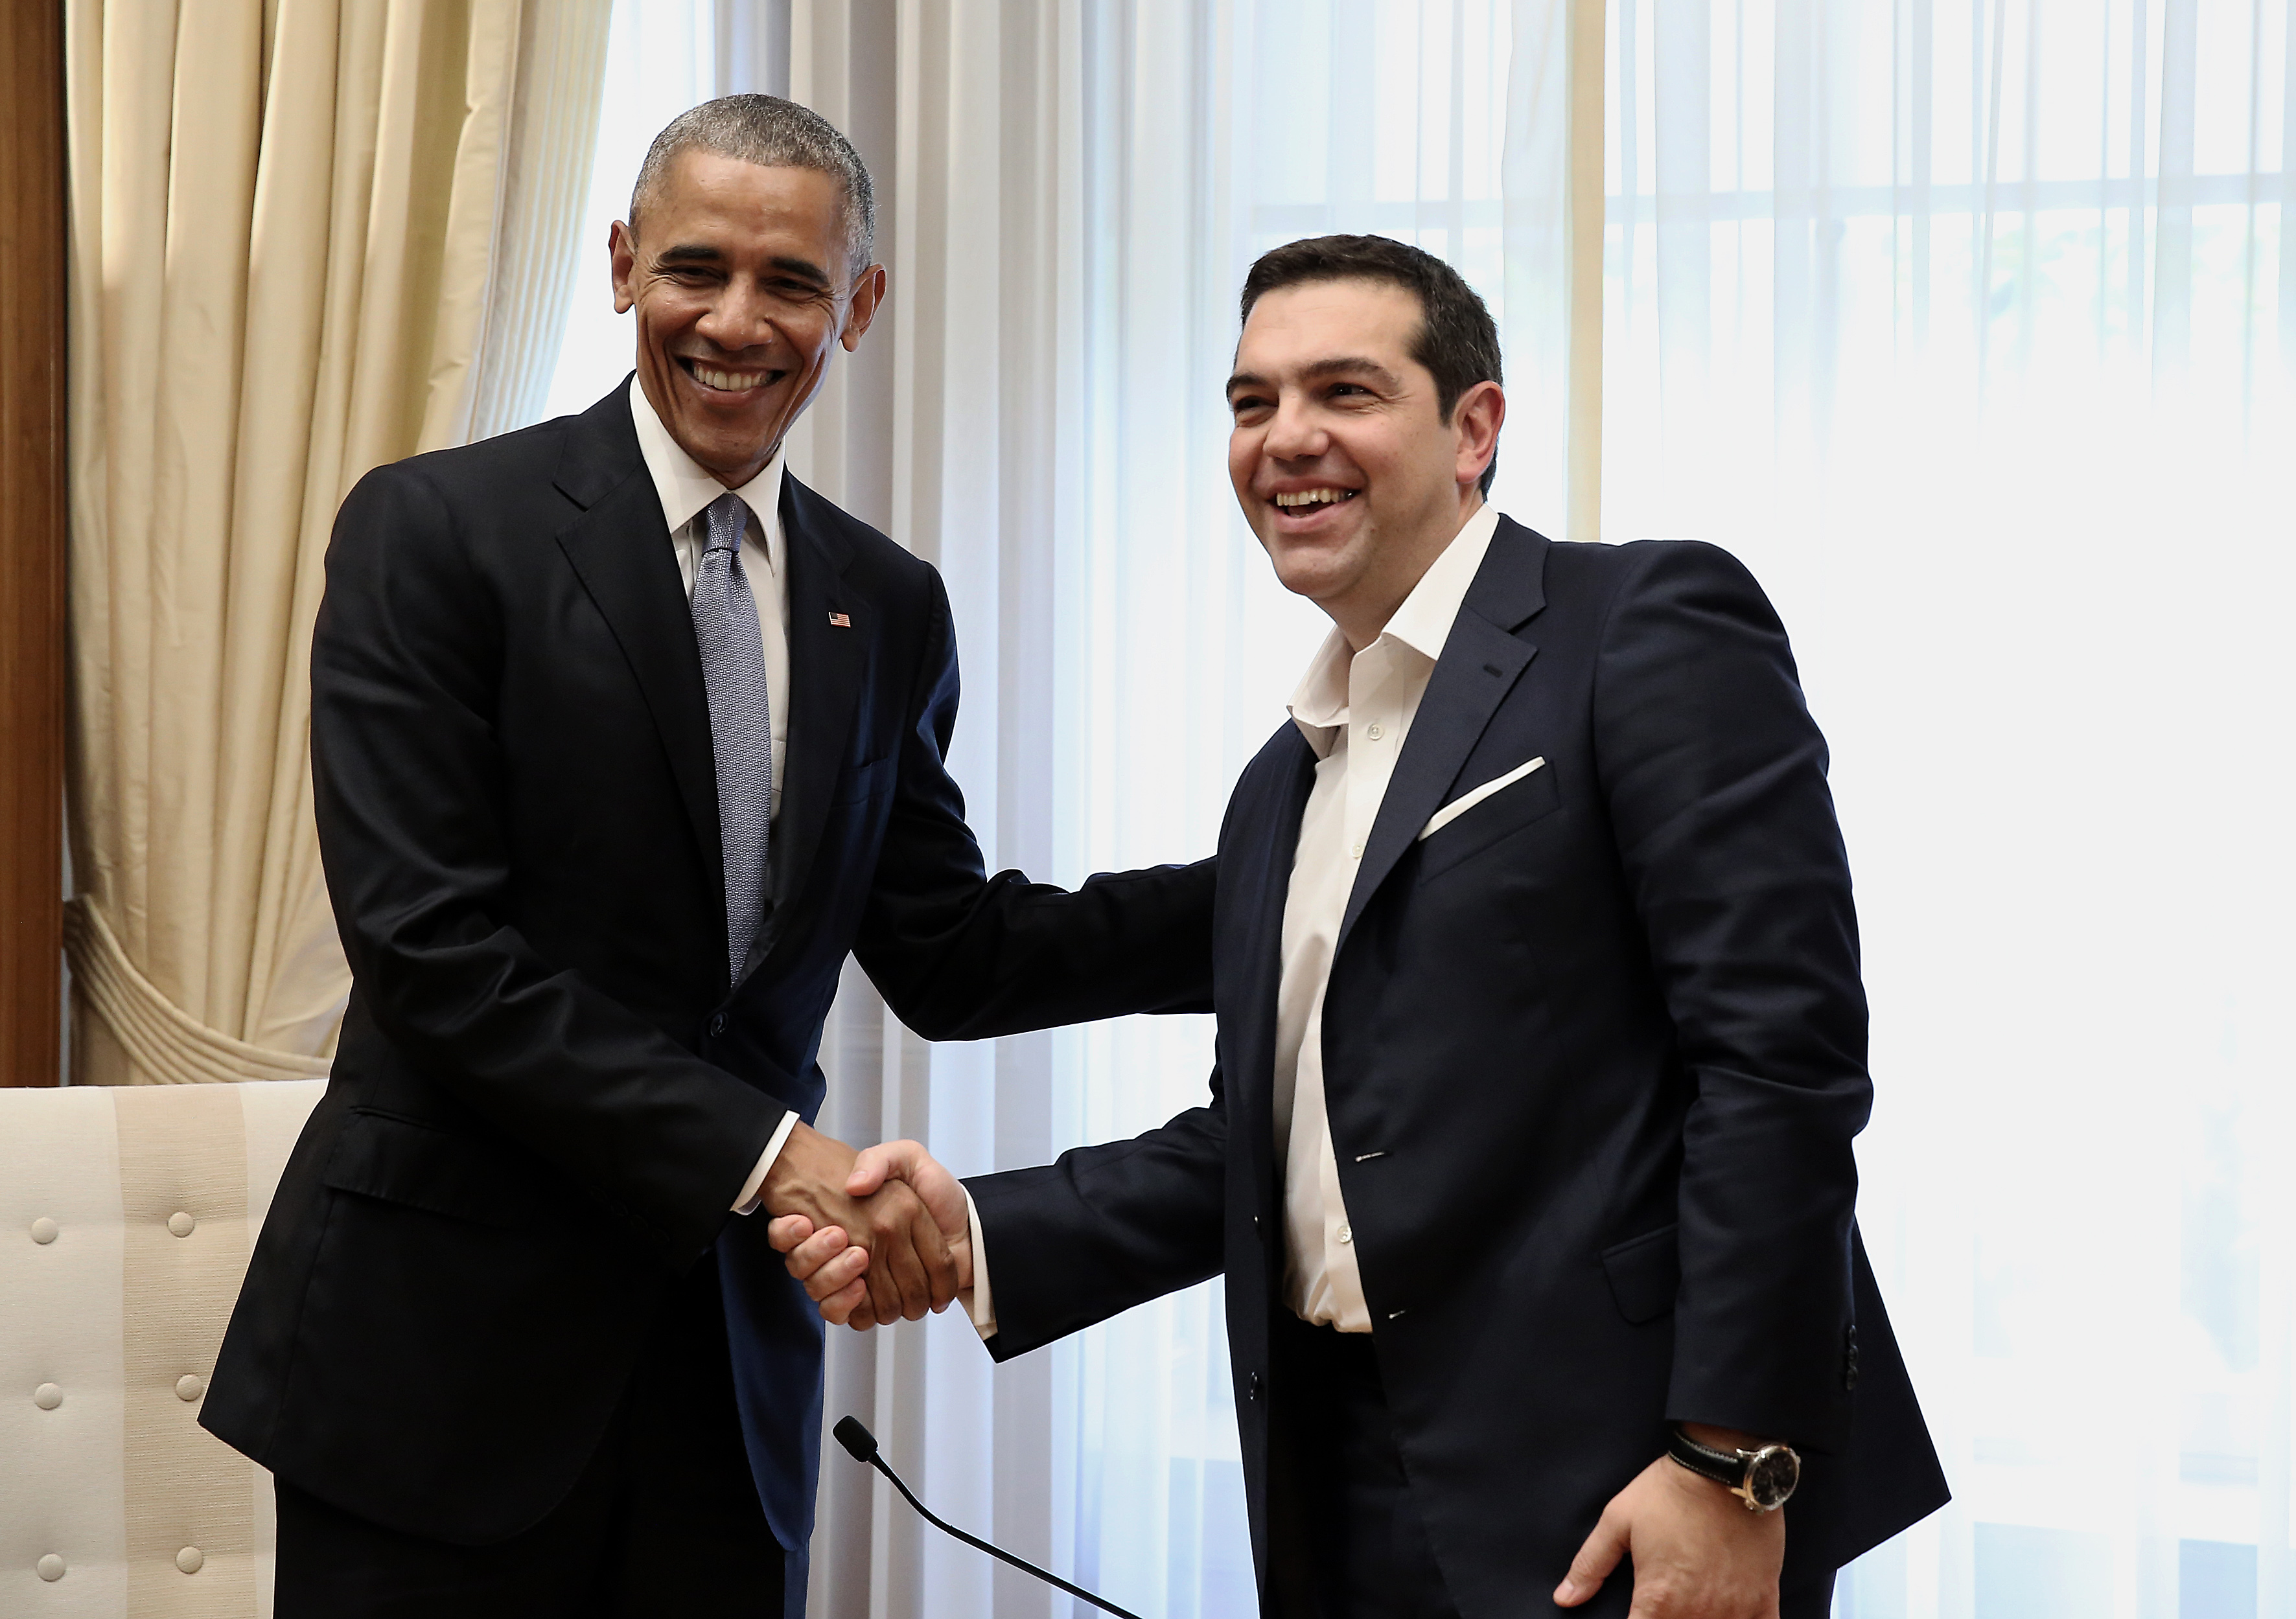 Ομπάμα σε Τσίπρα: Μόνο με τη λιτότητα δεν γίνεται ανάπτυξη, χρειάζονται μεταρρυθμίσεις και μείωση του χρέους – Θα βοηθήσω την Ελλάδα